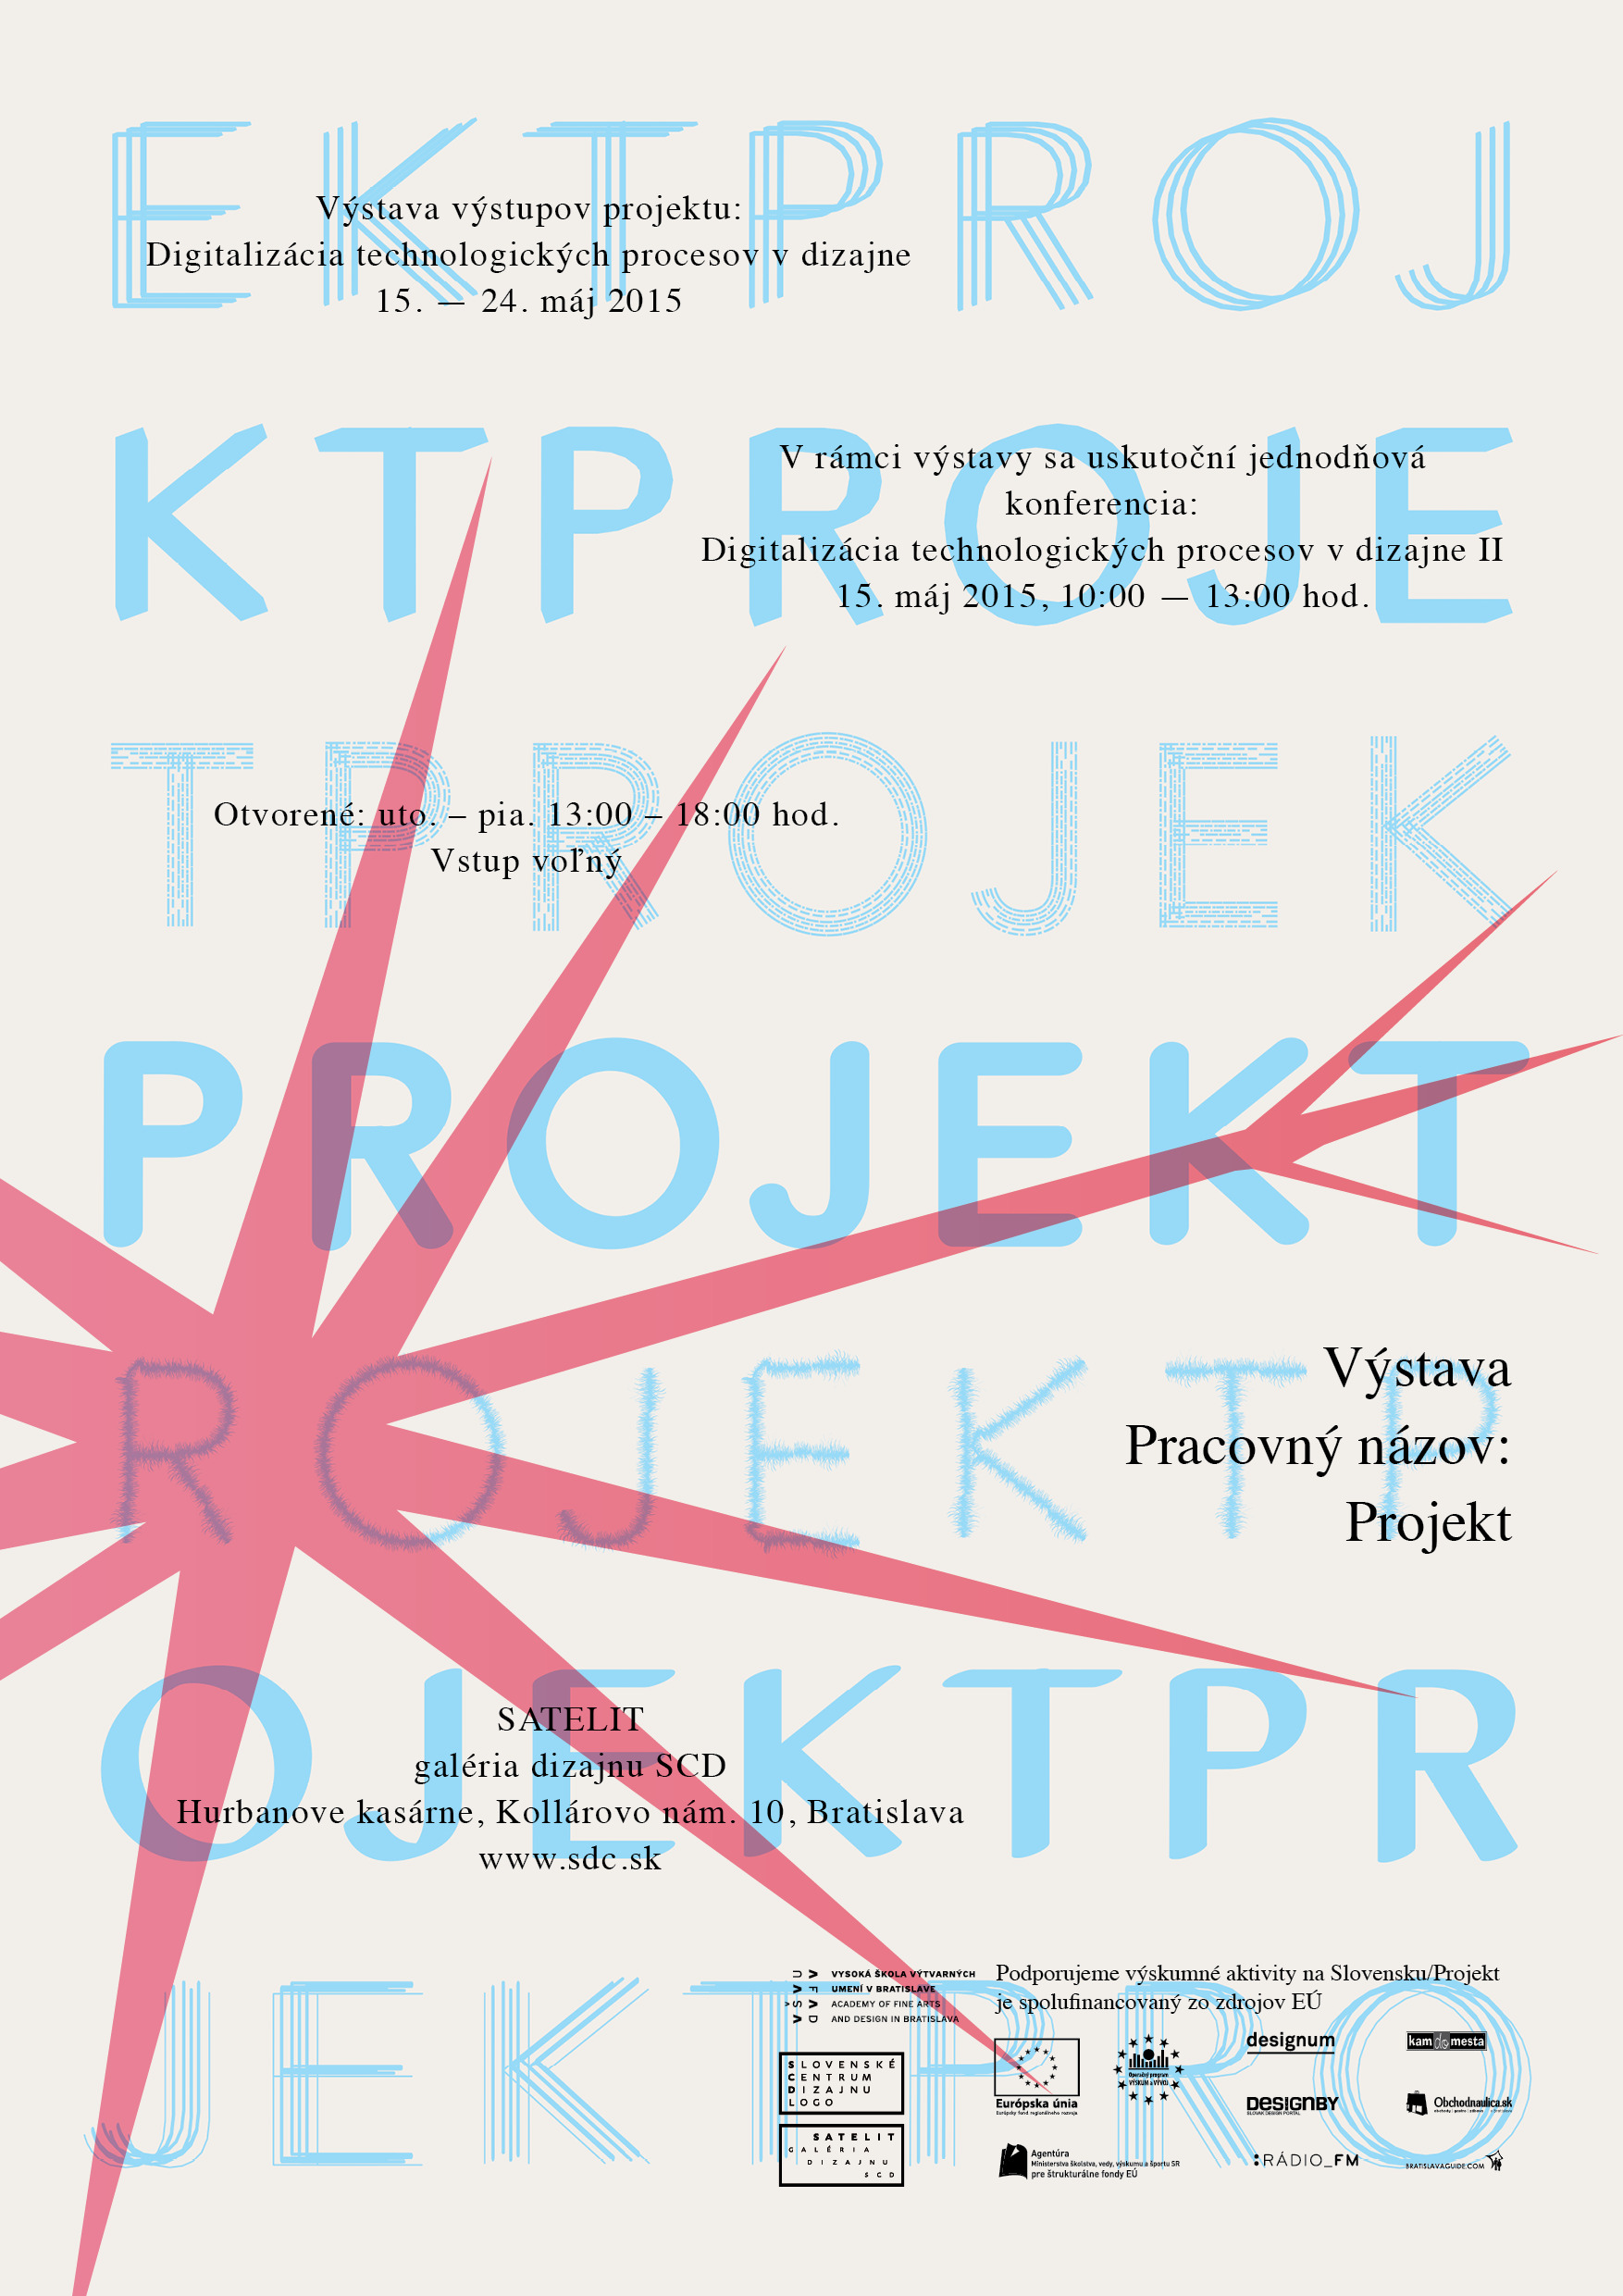 Pracovný názov: projekt – Výstava výstupov projektu Digitalizácia technologických procesov v dizajne.